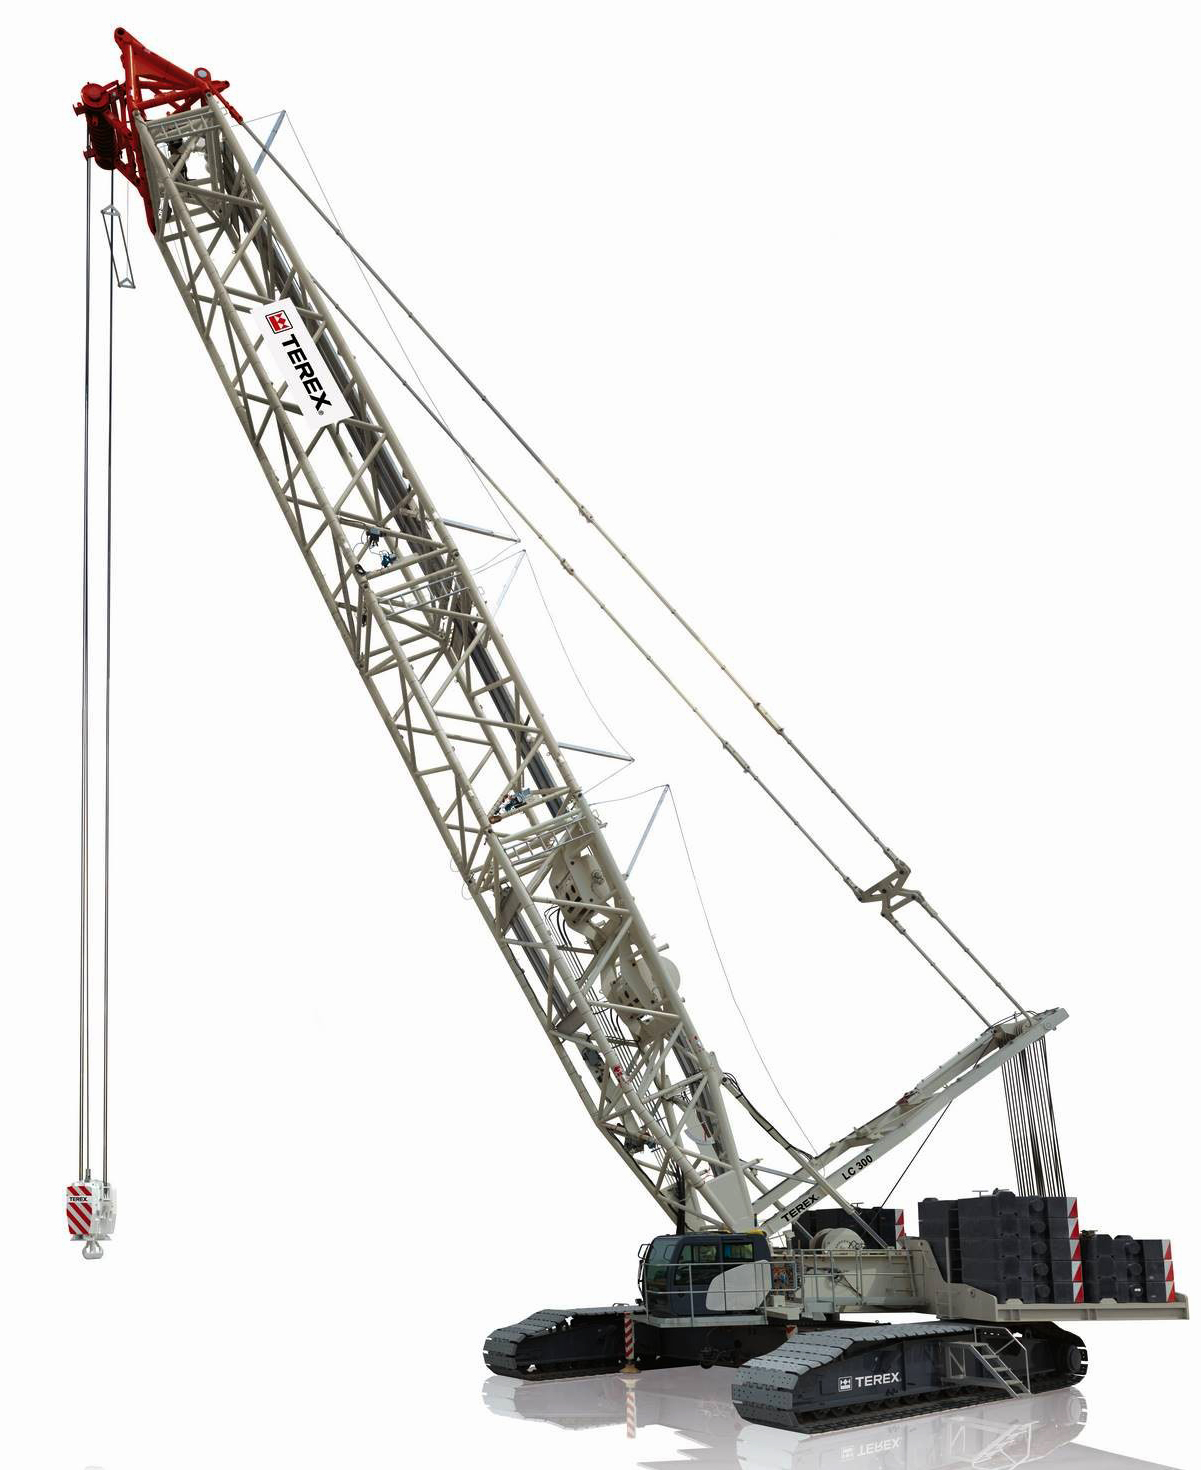 Terex-lattice-boom-LC-300-ton-crawler-crane